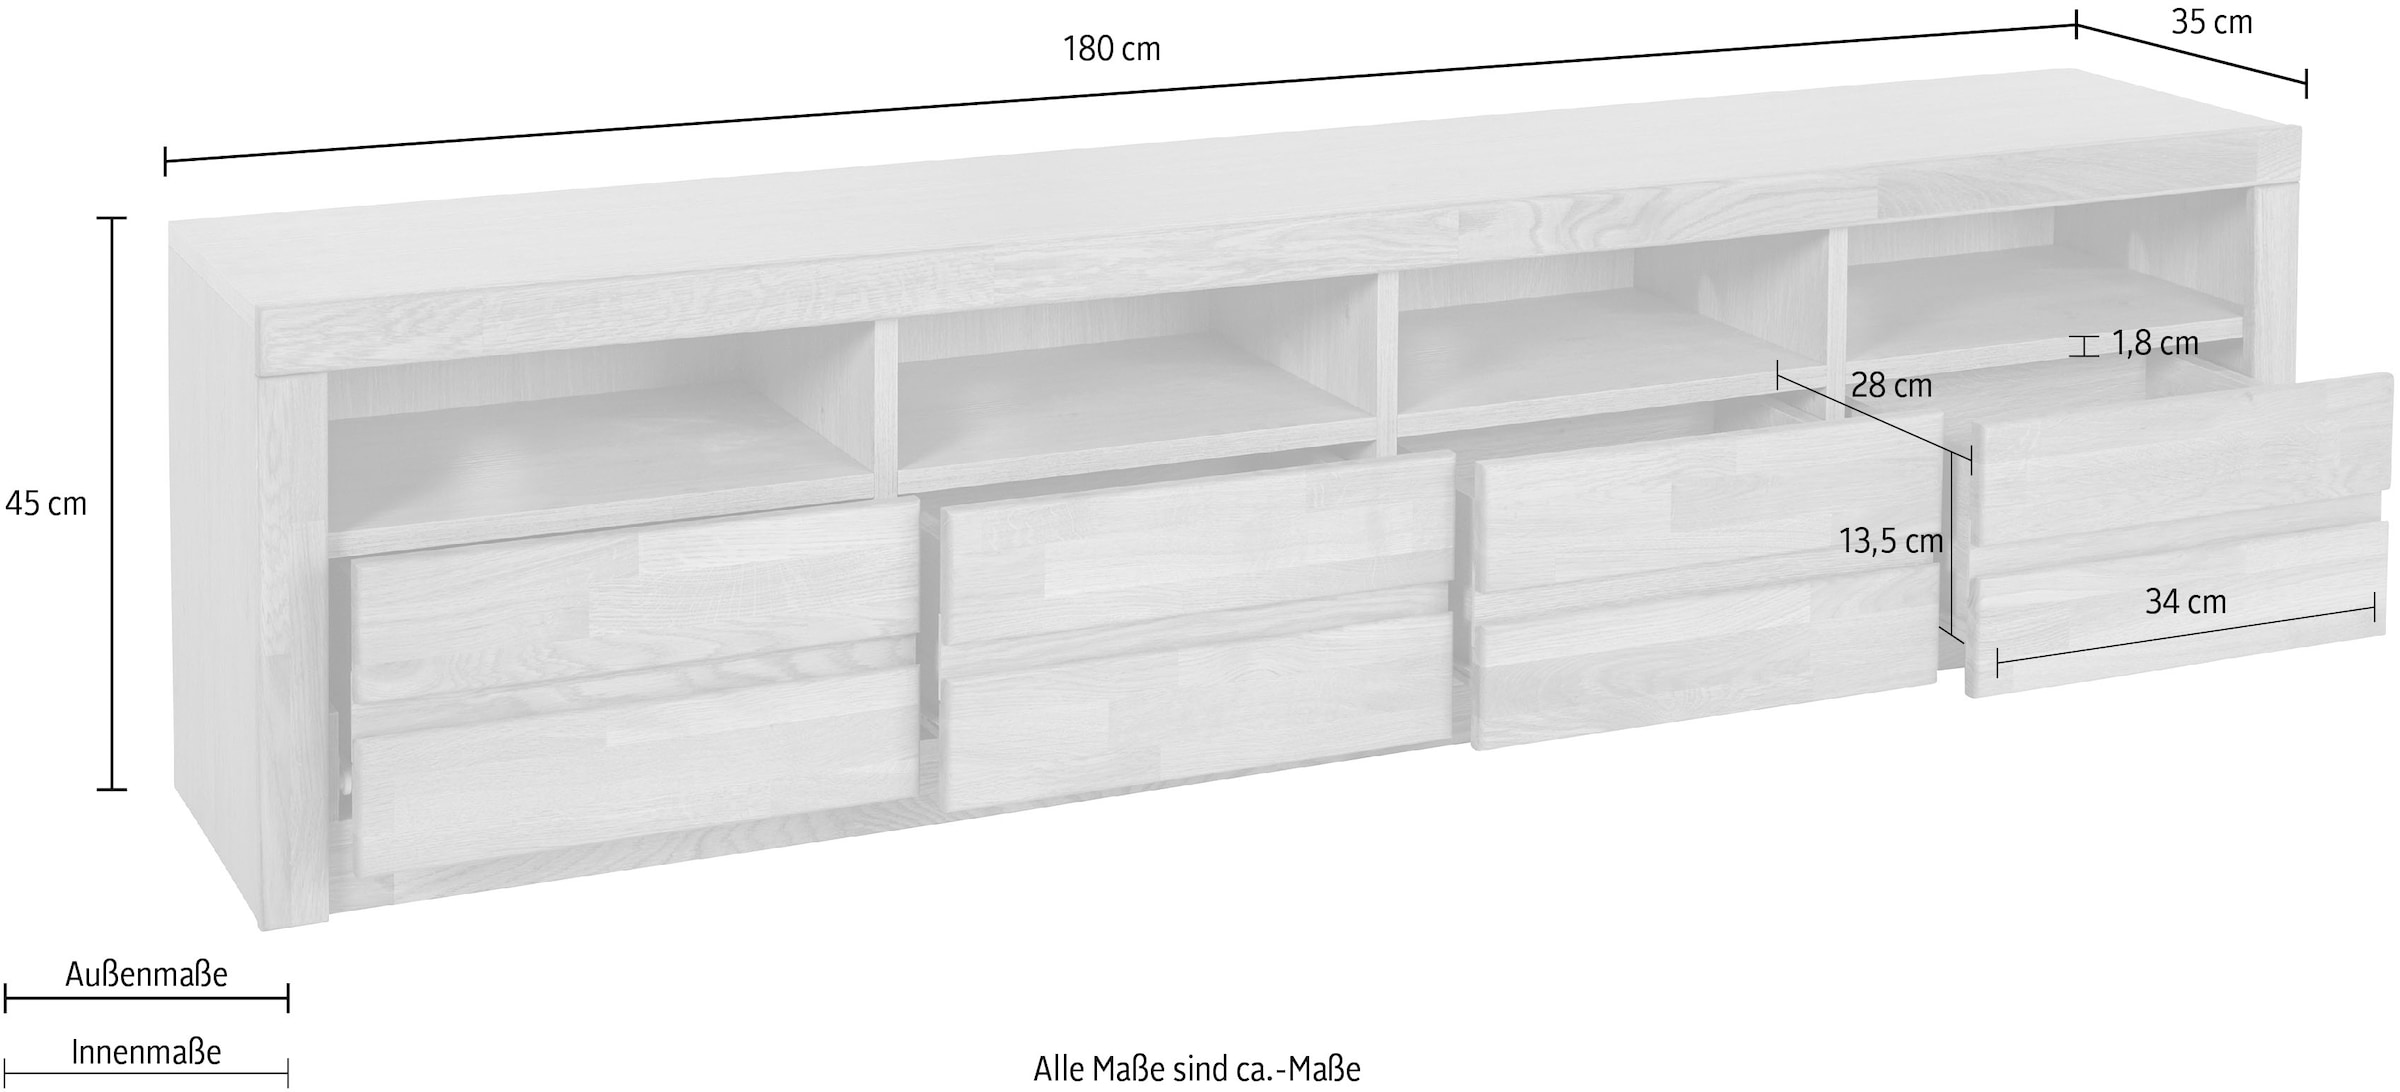 Home affaire Lowboard »Silkeborg«, schöne grifflose Optik,Breite 180 cm